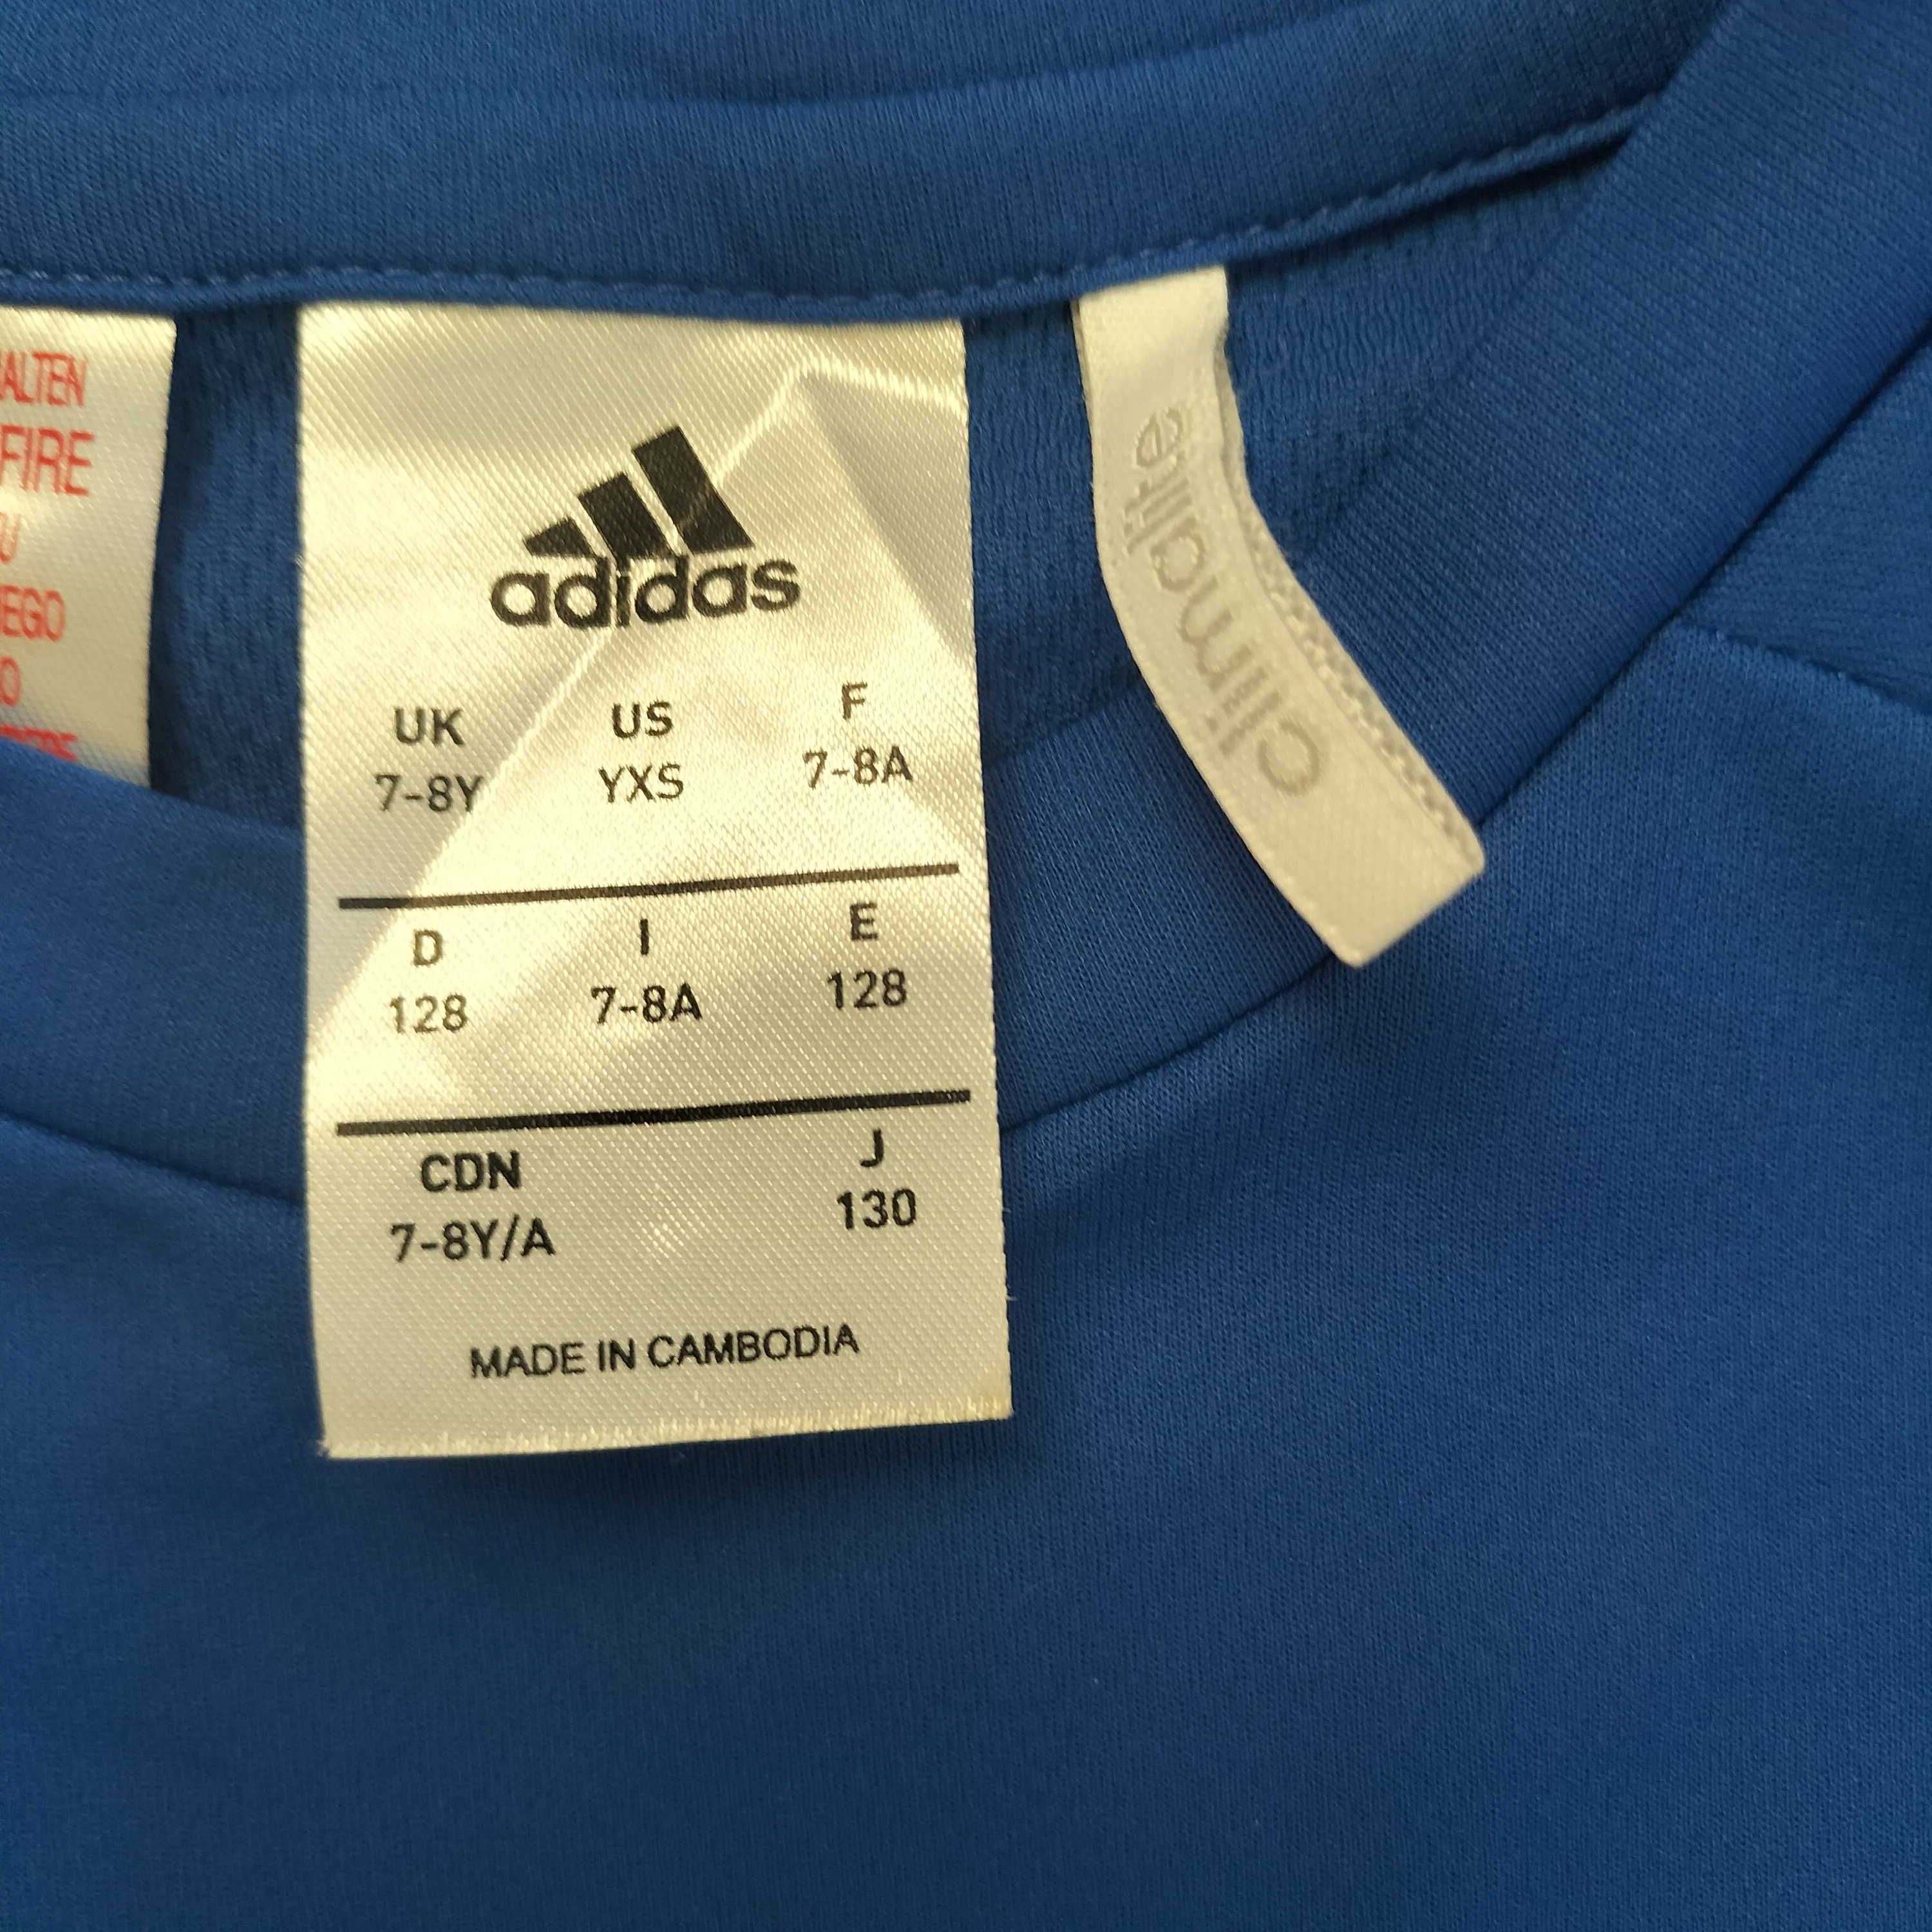 Koszulka Adidas rozmiar 128